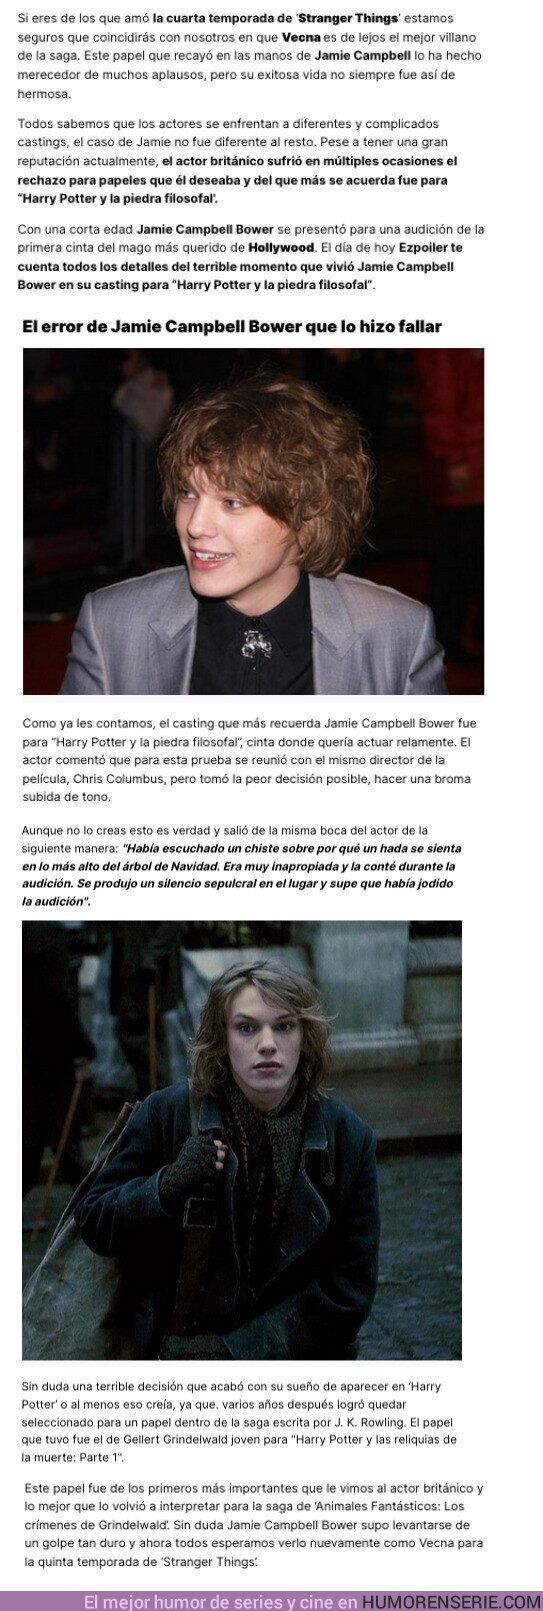 129484 - GALERÍA: Jamie Campbell Bower fue rechazado en Harry Potter por culpa de un comentario demasiado picante